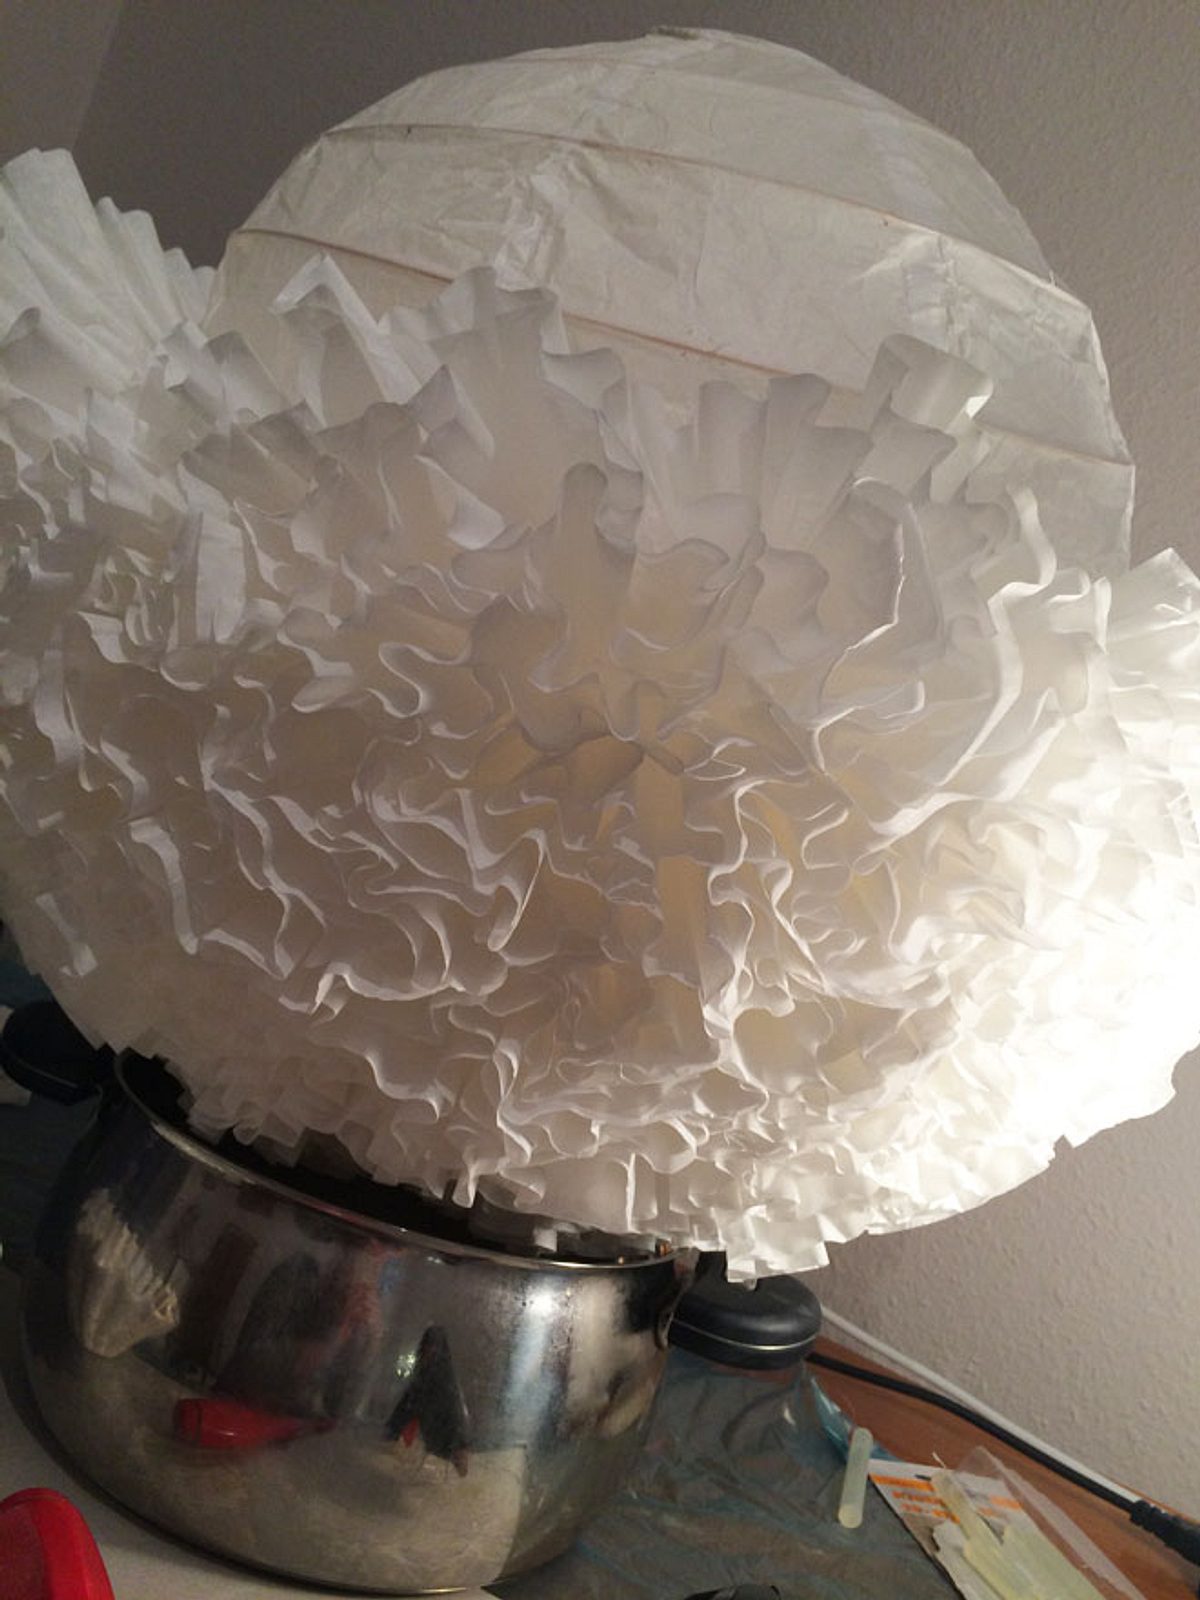 IKEA Lampenschirm mit Kaffeefiltern ist zur Hälfte fertig beklebt.